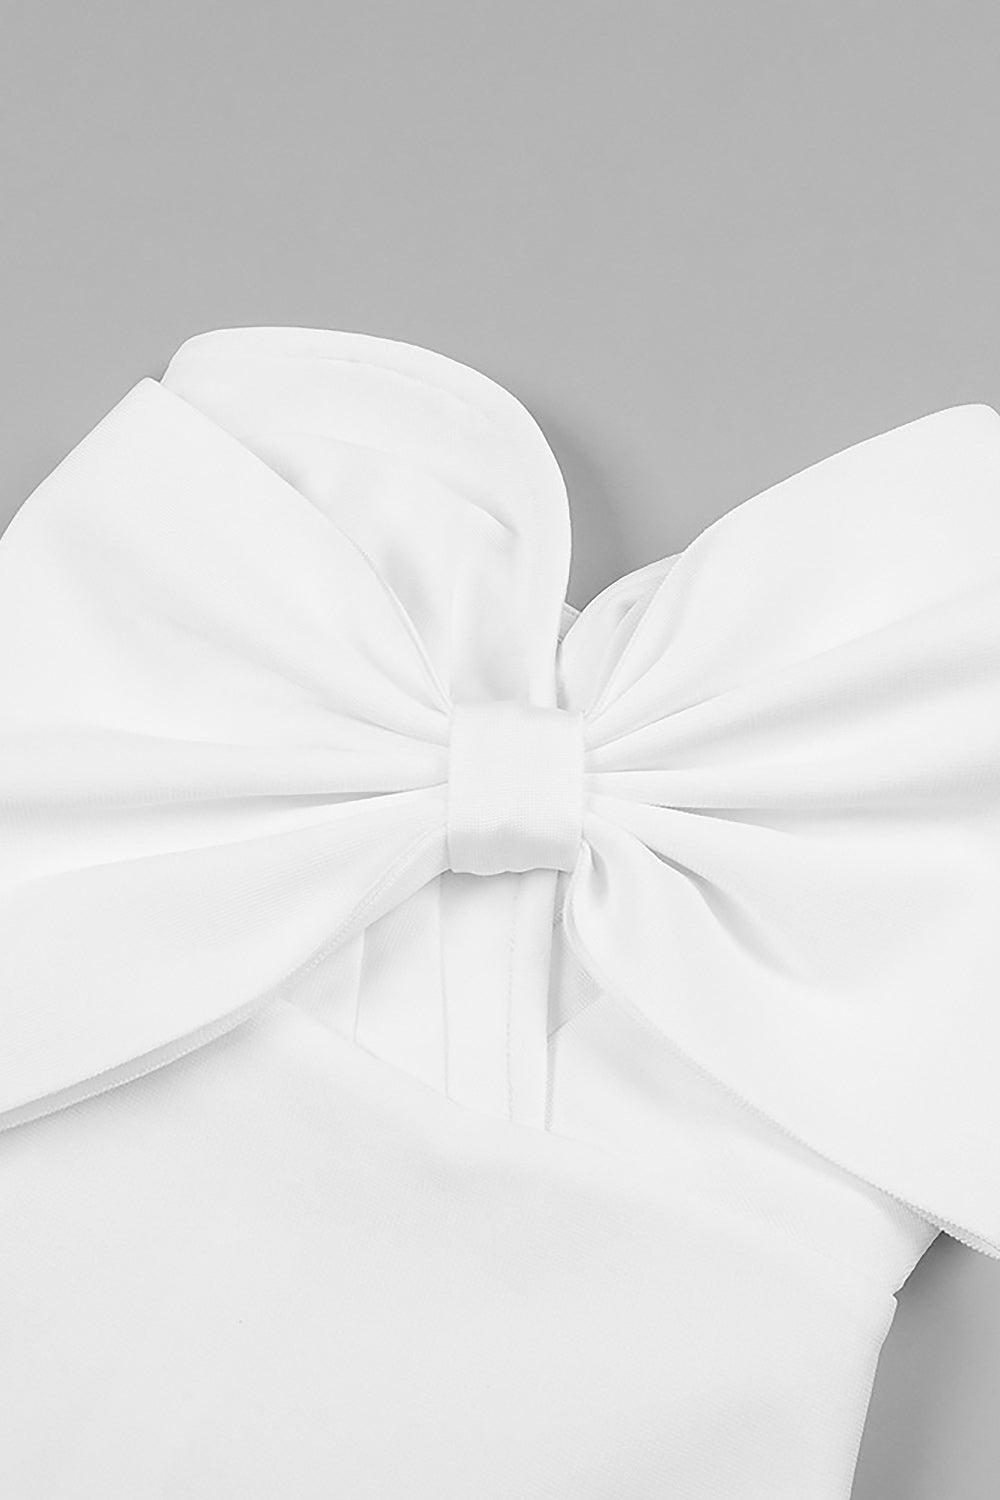 Mini robe bandage sans bretelles avec nœud papillon de créateur en noir et blanc